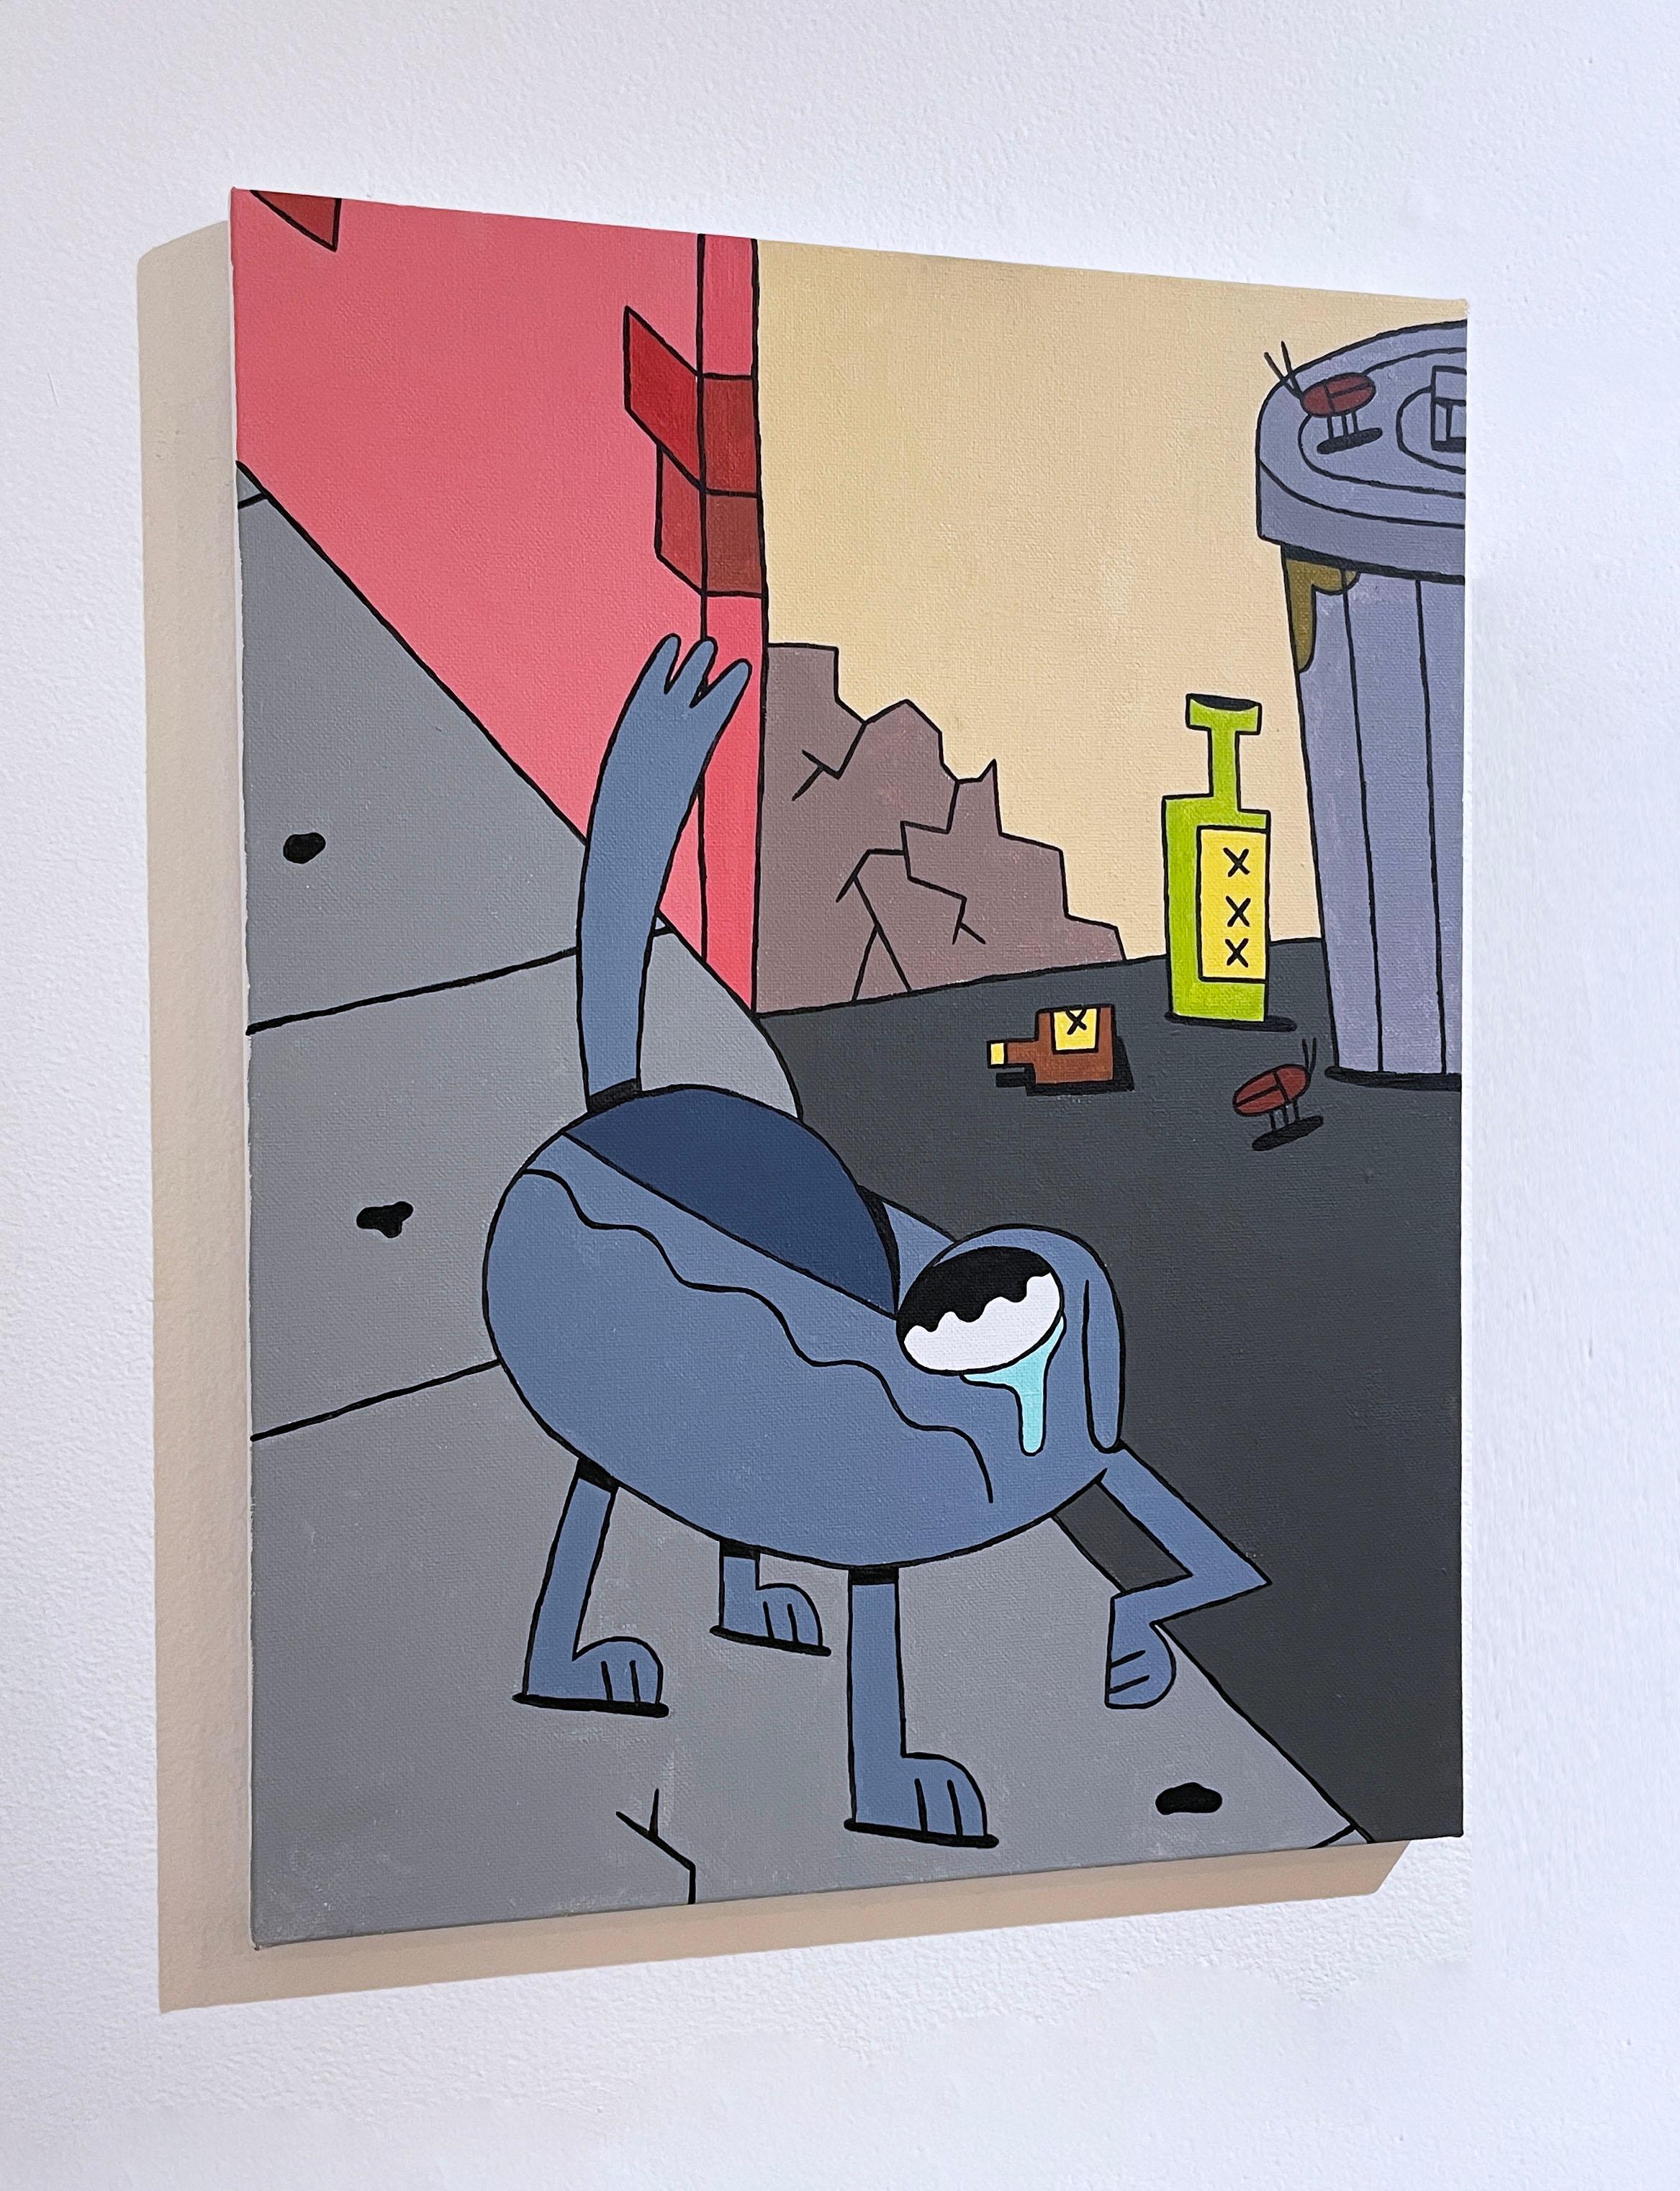 Teary Eyed von BARC, der Hund, Pop-Comic-Buch, Tierfigur, Cartoon-Stil Leinwand (Grau), Figurative Painting, von BARC the dog